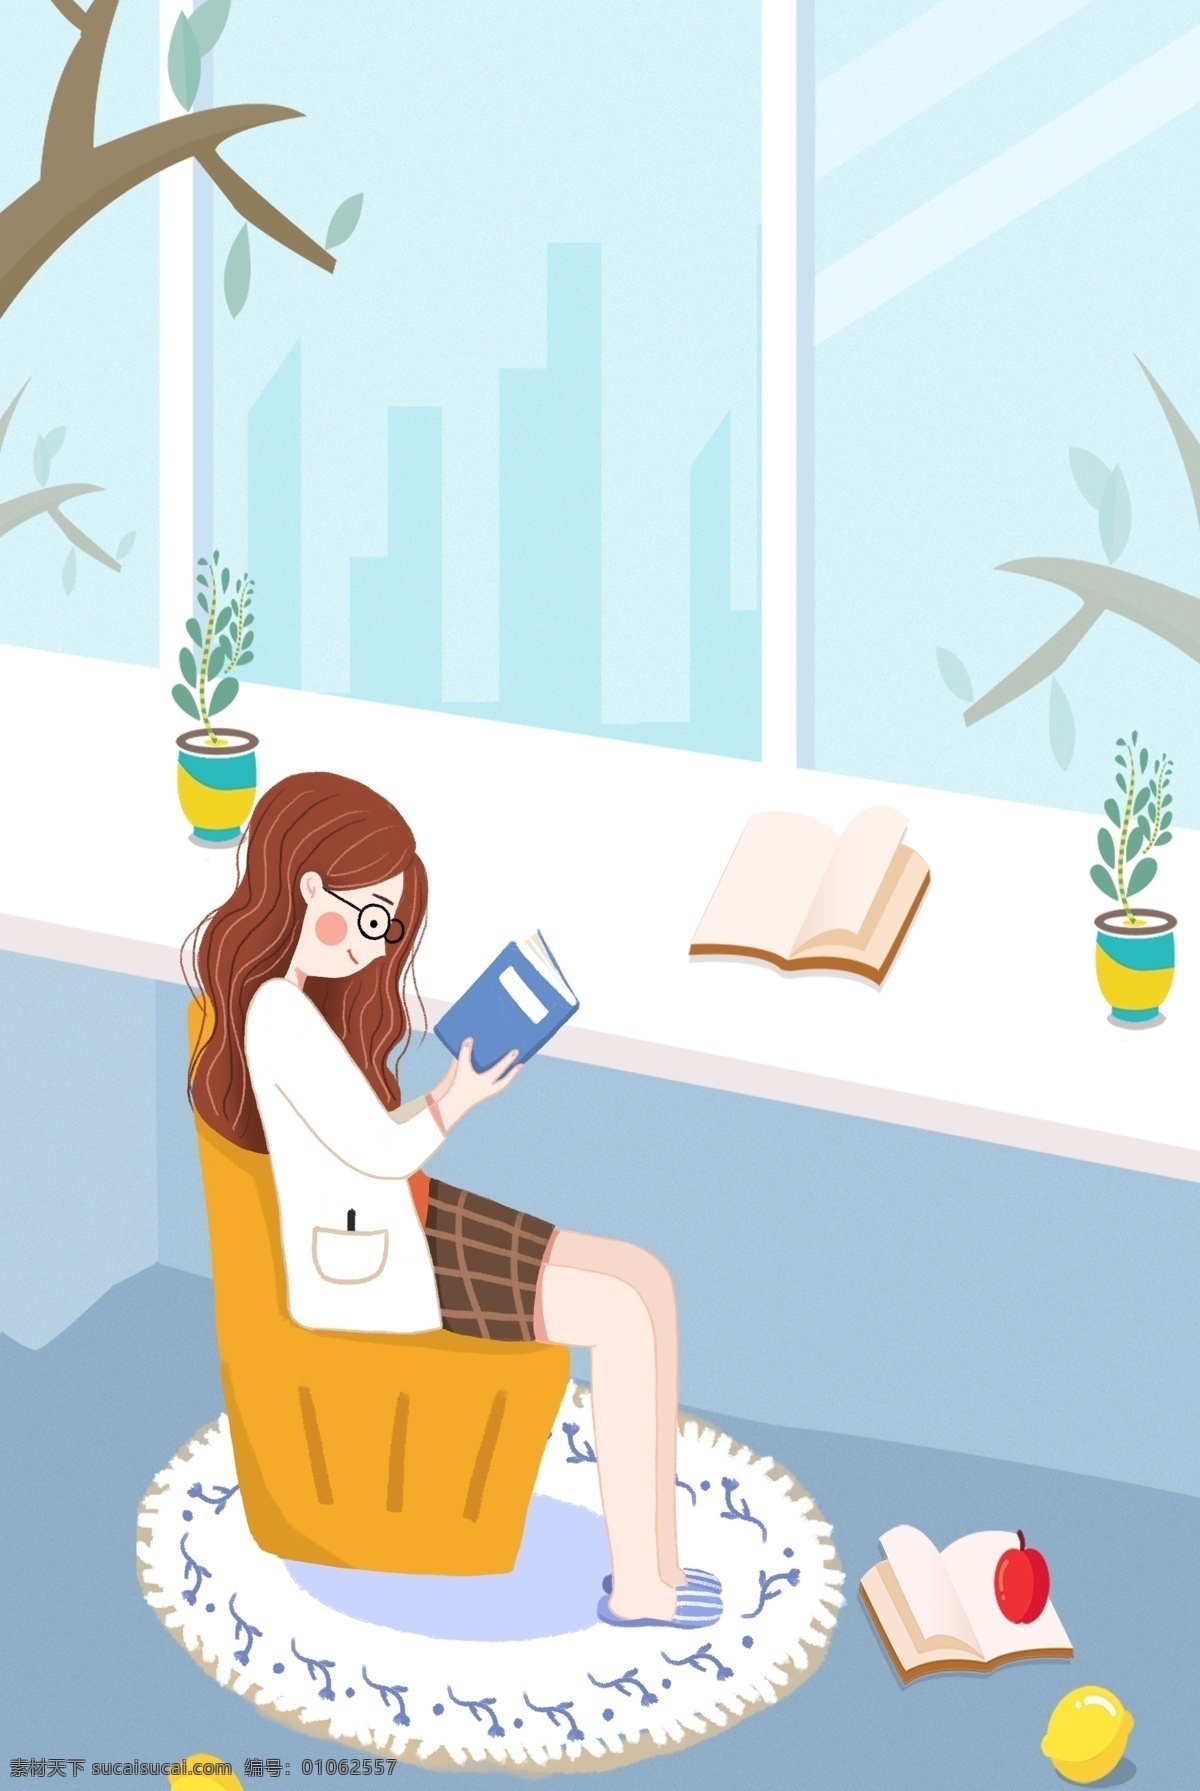 女孩 阅读 惬意 生活 背景 手绘 世界阅读日 书本 室内 家居 国庆节